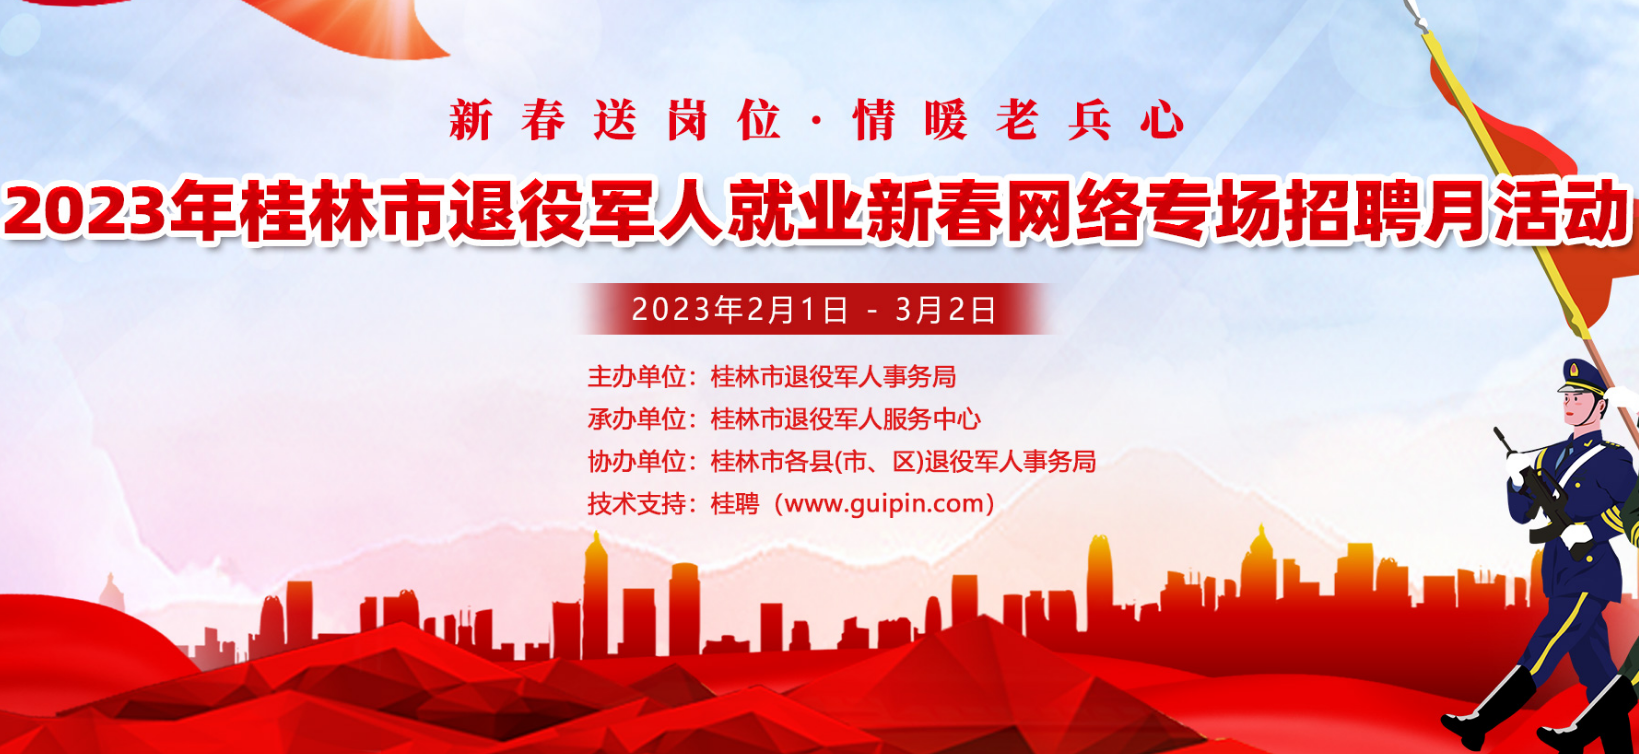 2023年桂林市退役军人新春网络专场招聘月活动,线上招聘会